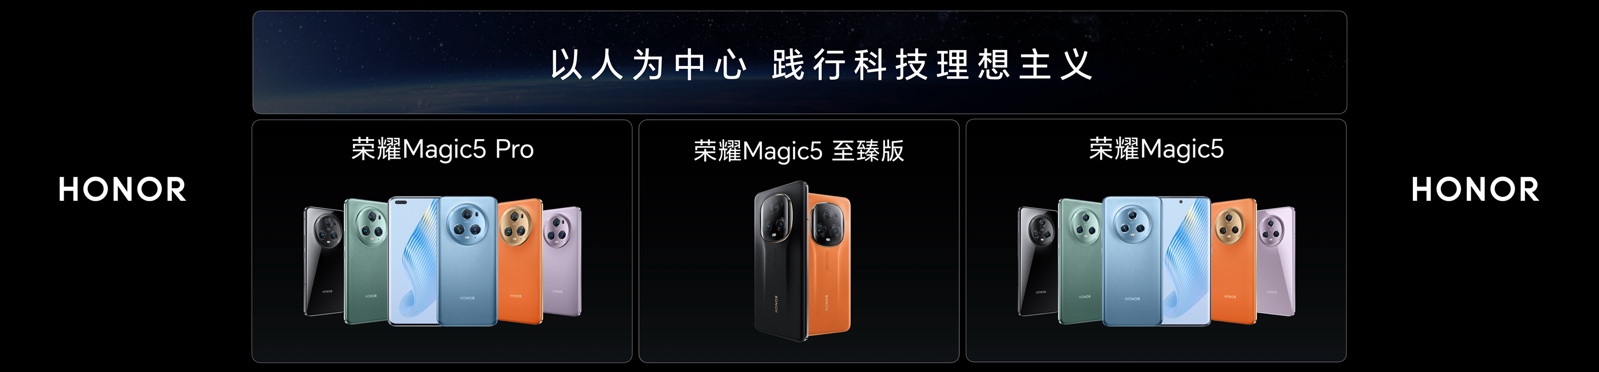 荣耀Magic5系列国内发布 多领域技术全面爆发3